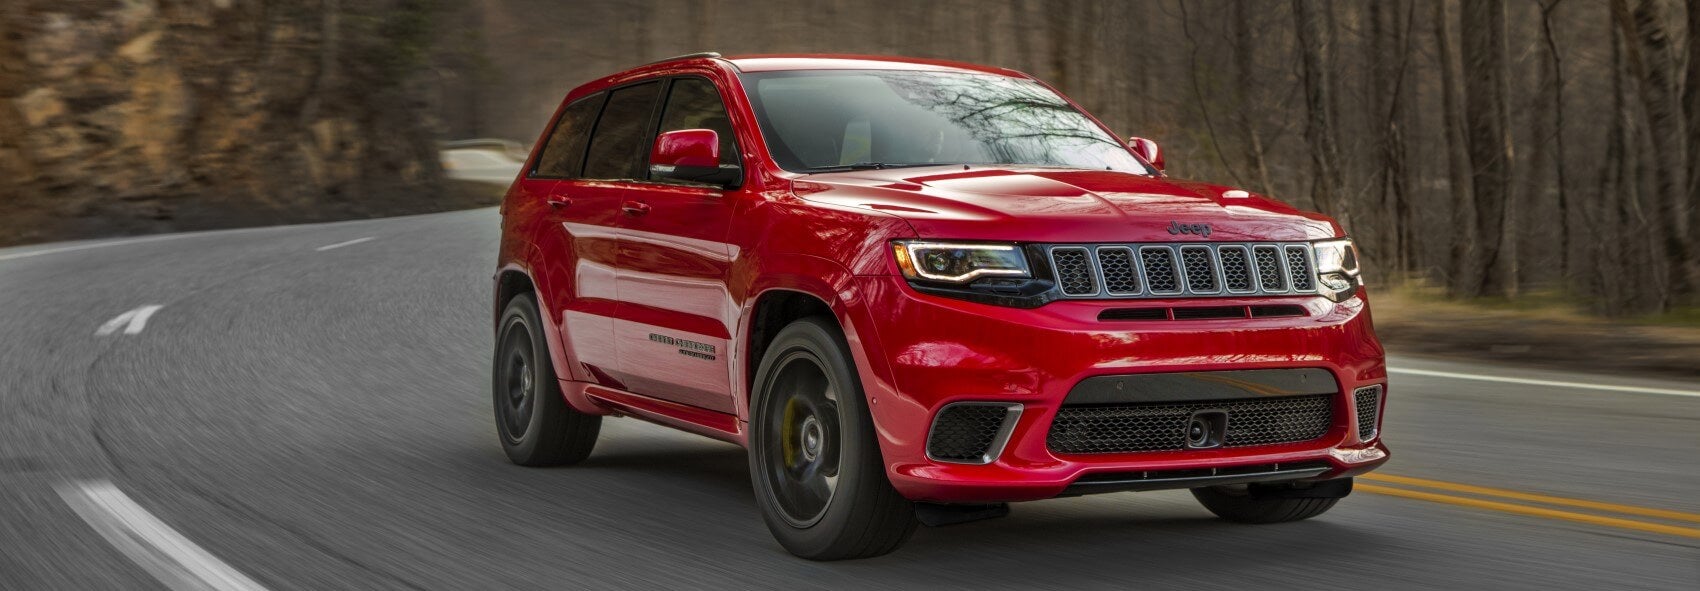 Jeep Grand Cherokee Lease Deals near Ann Arbor